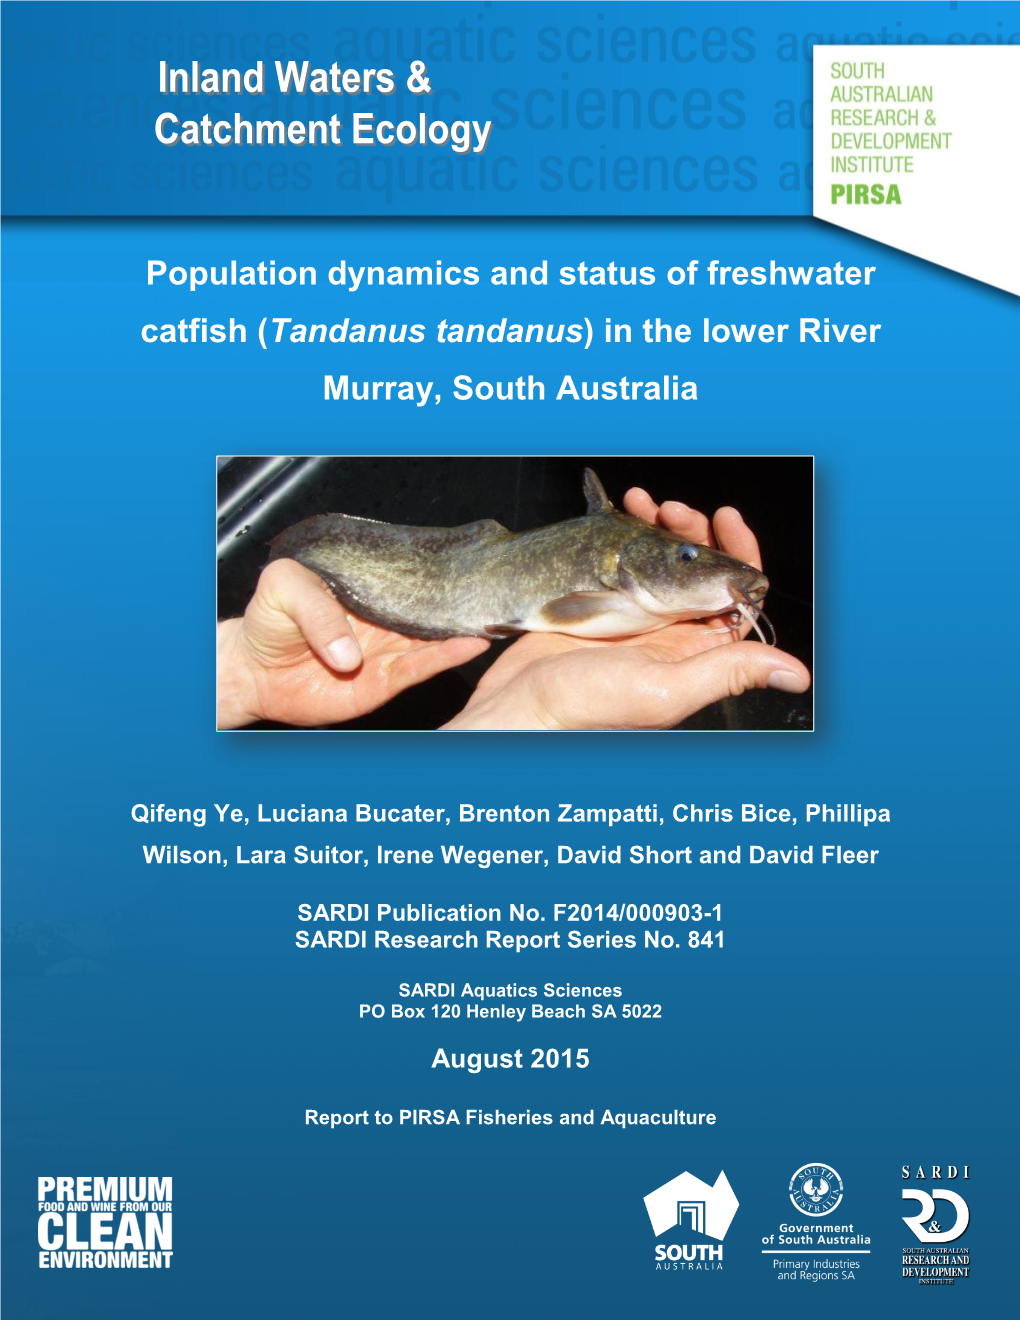 Population Dynamics and Status of Freshwater Catfish (Tandanus Tandanus) in the Lower River Murray, South Australia